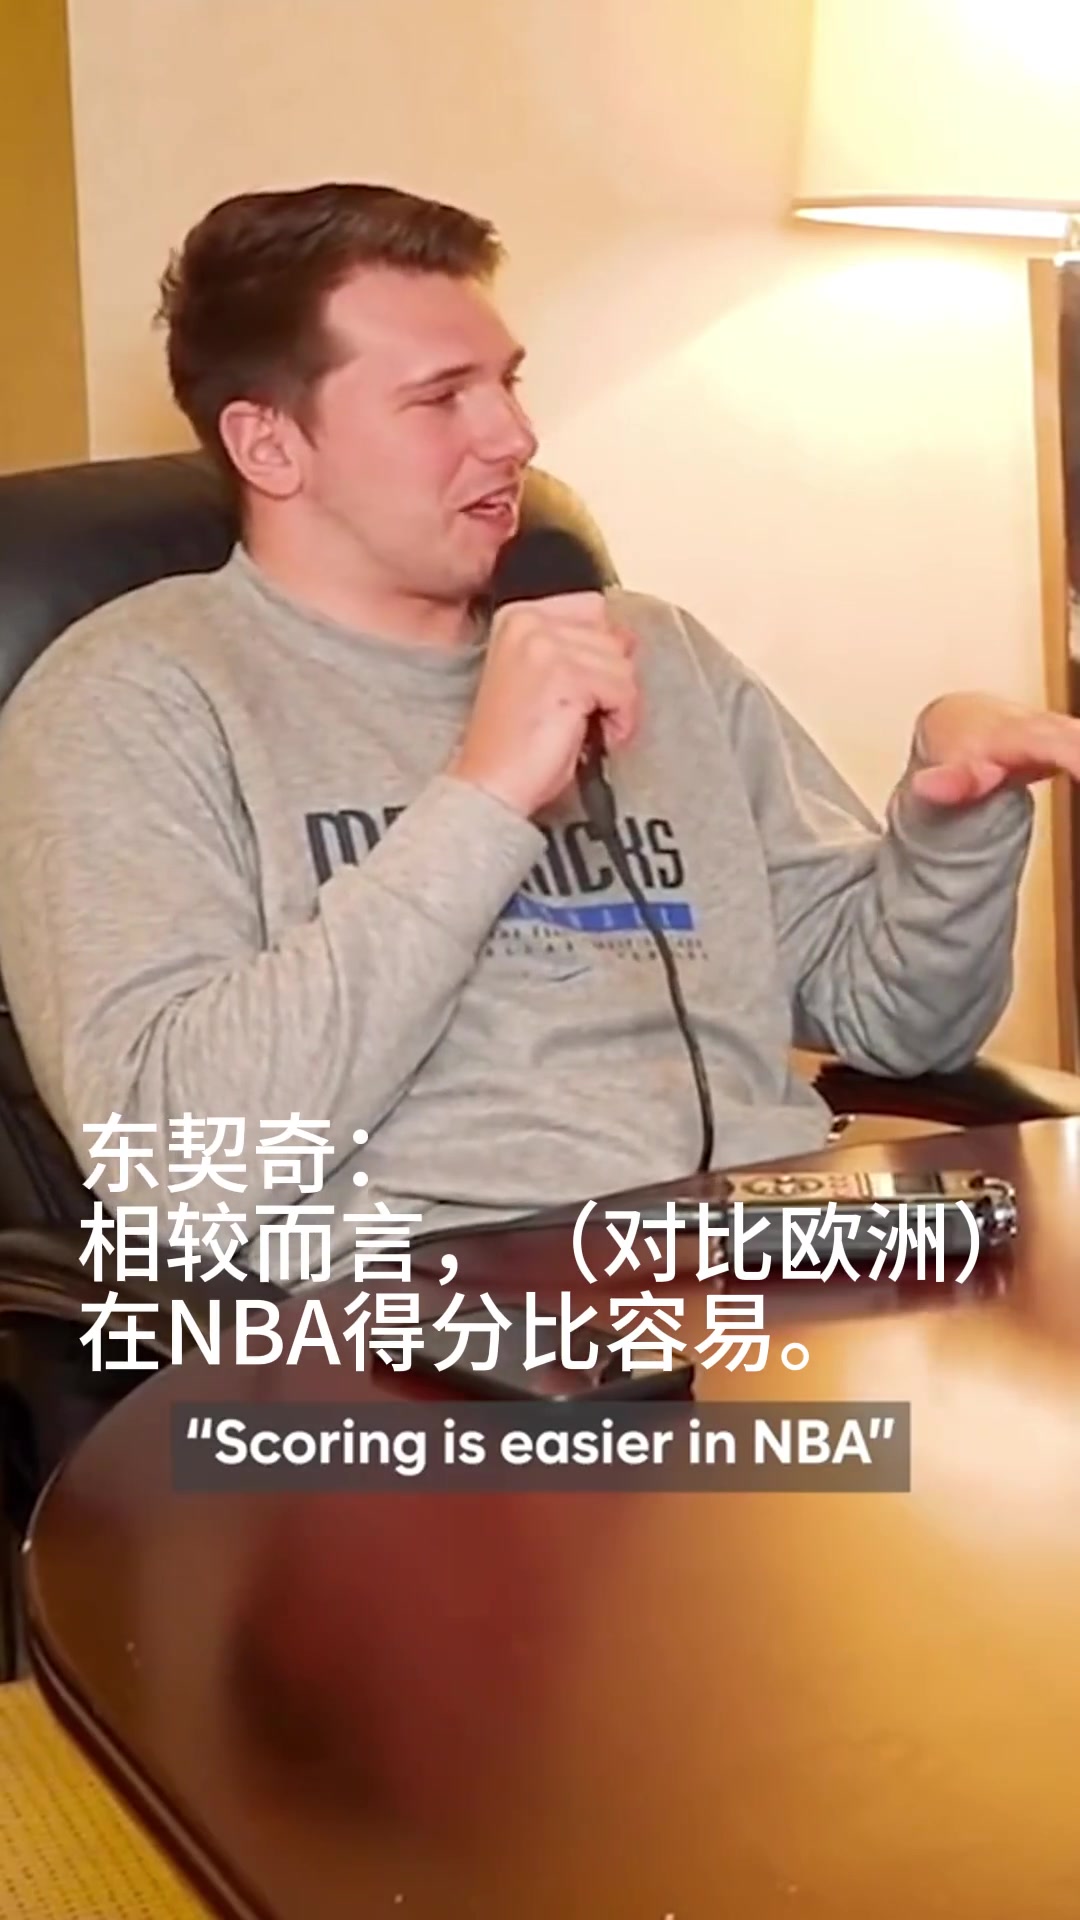 字母哥：欧洲篮球赛比NBA难打！东契奇：NBA得分更简单！